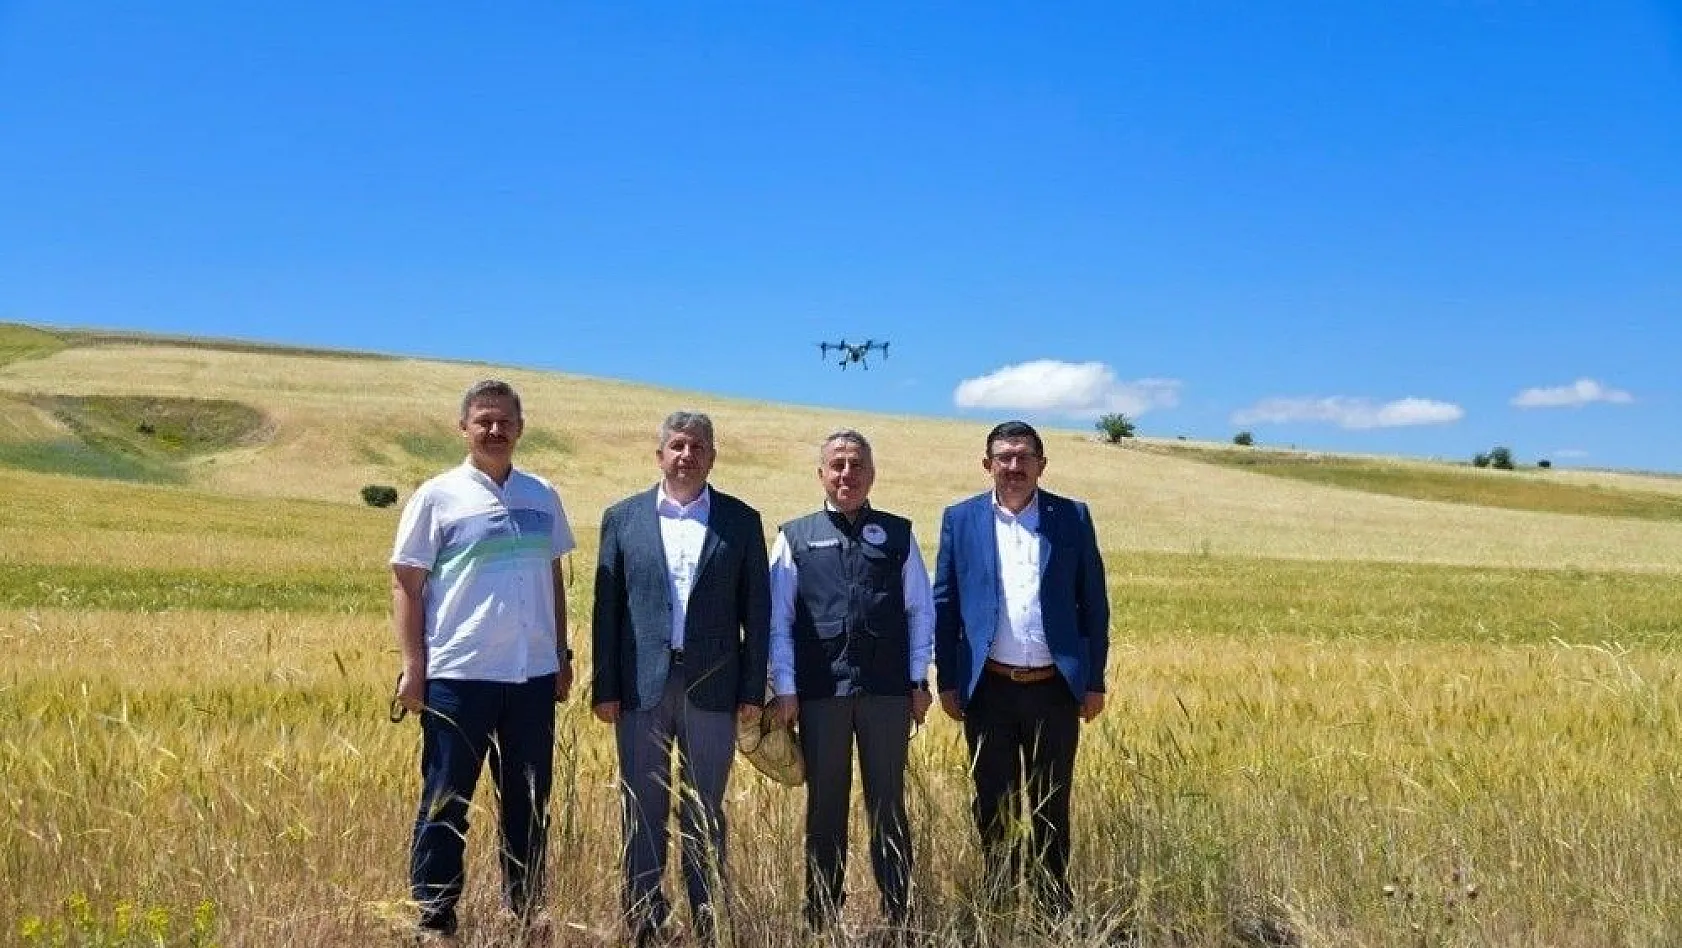 Kayseri'de süne ile mücadele de ilk defa 'Drone' kullanıldı